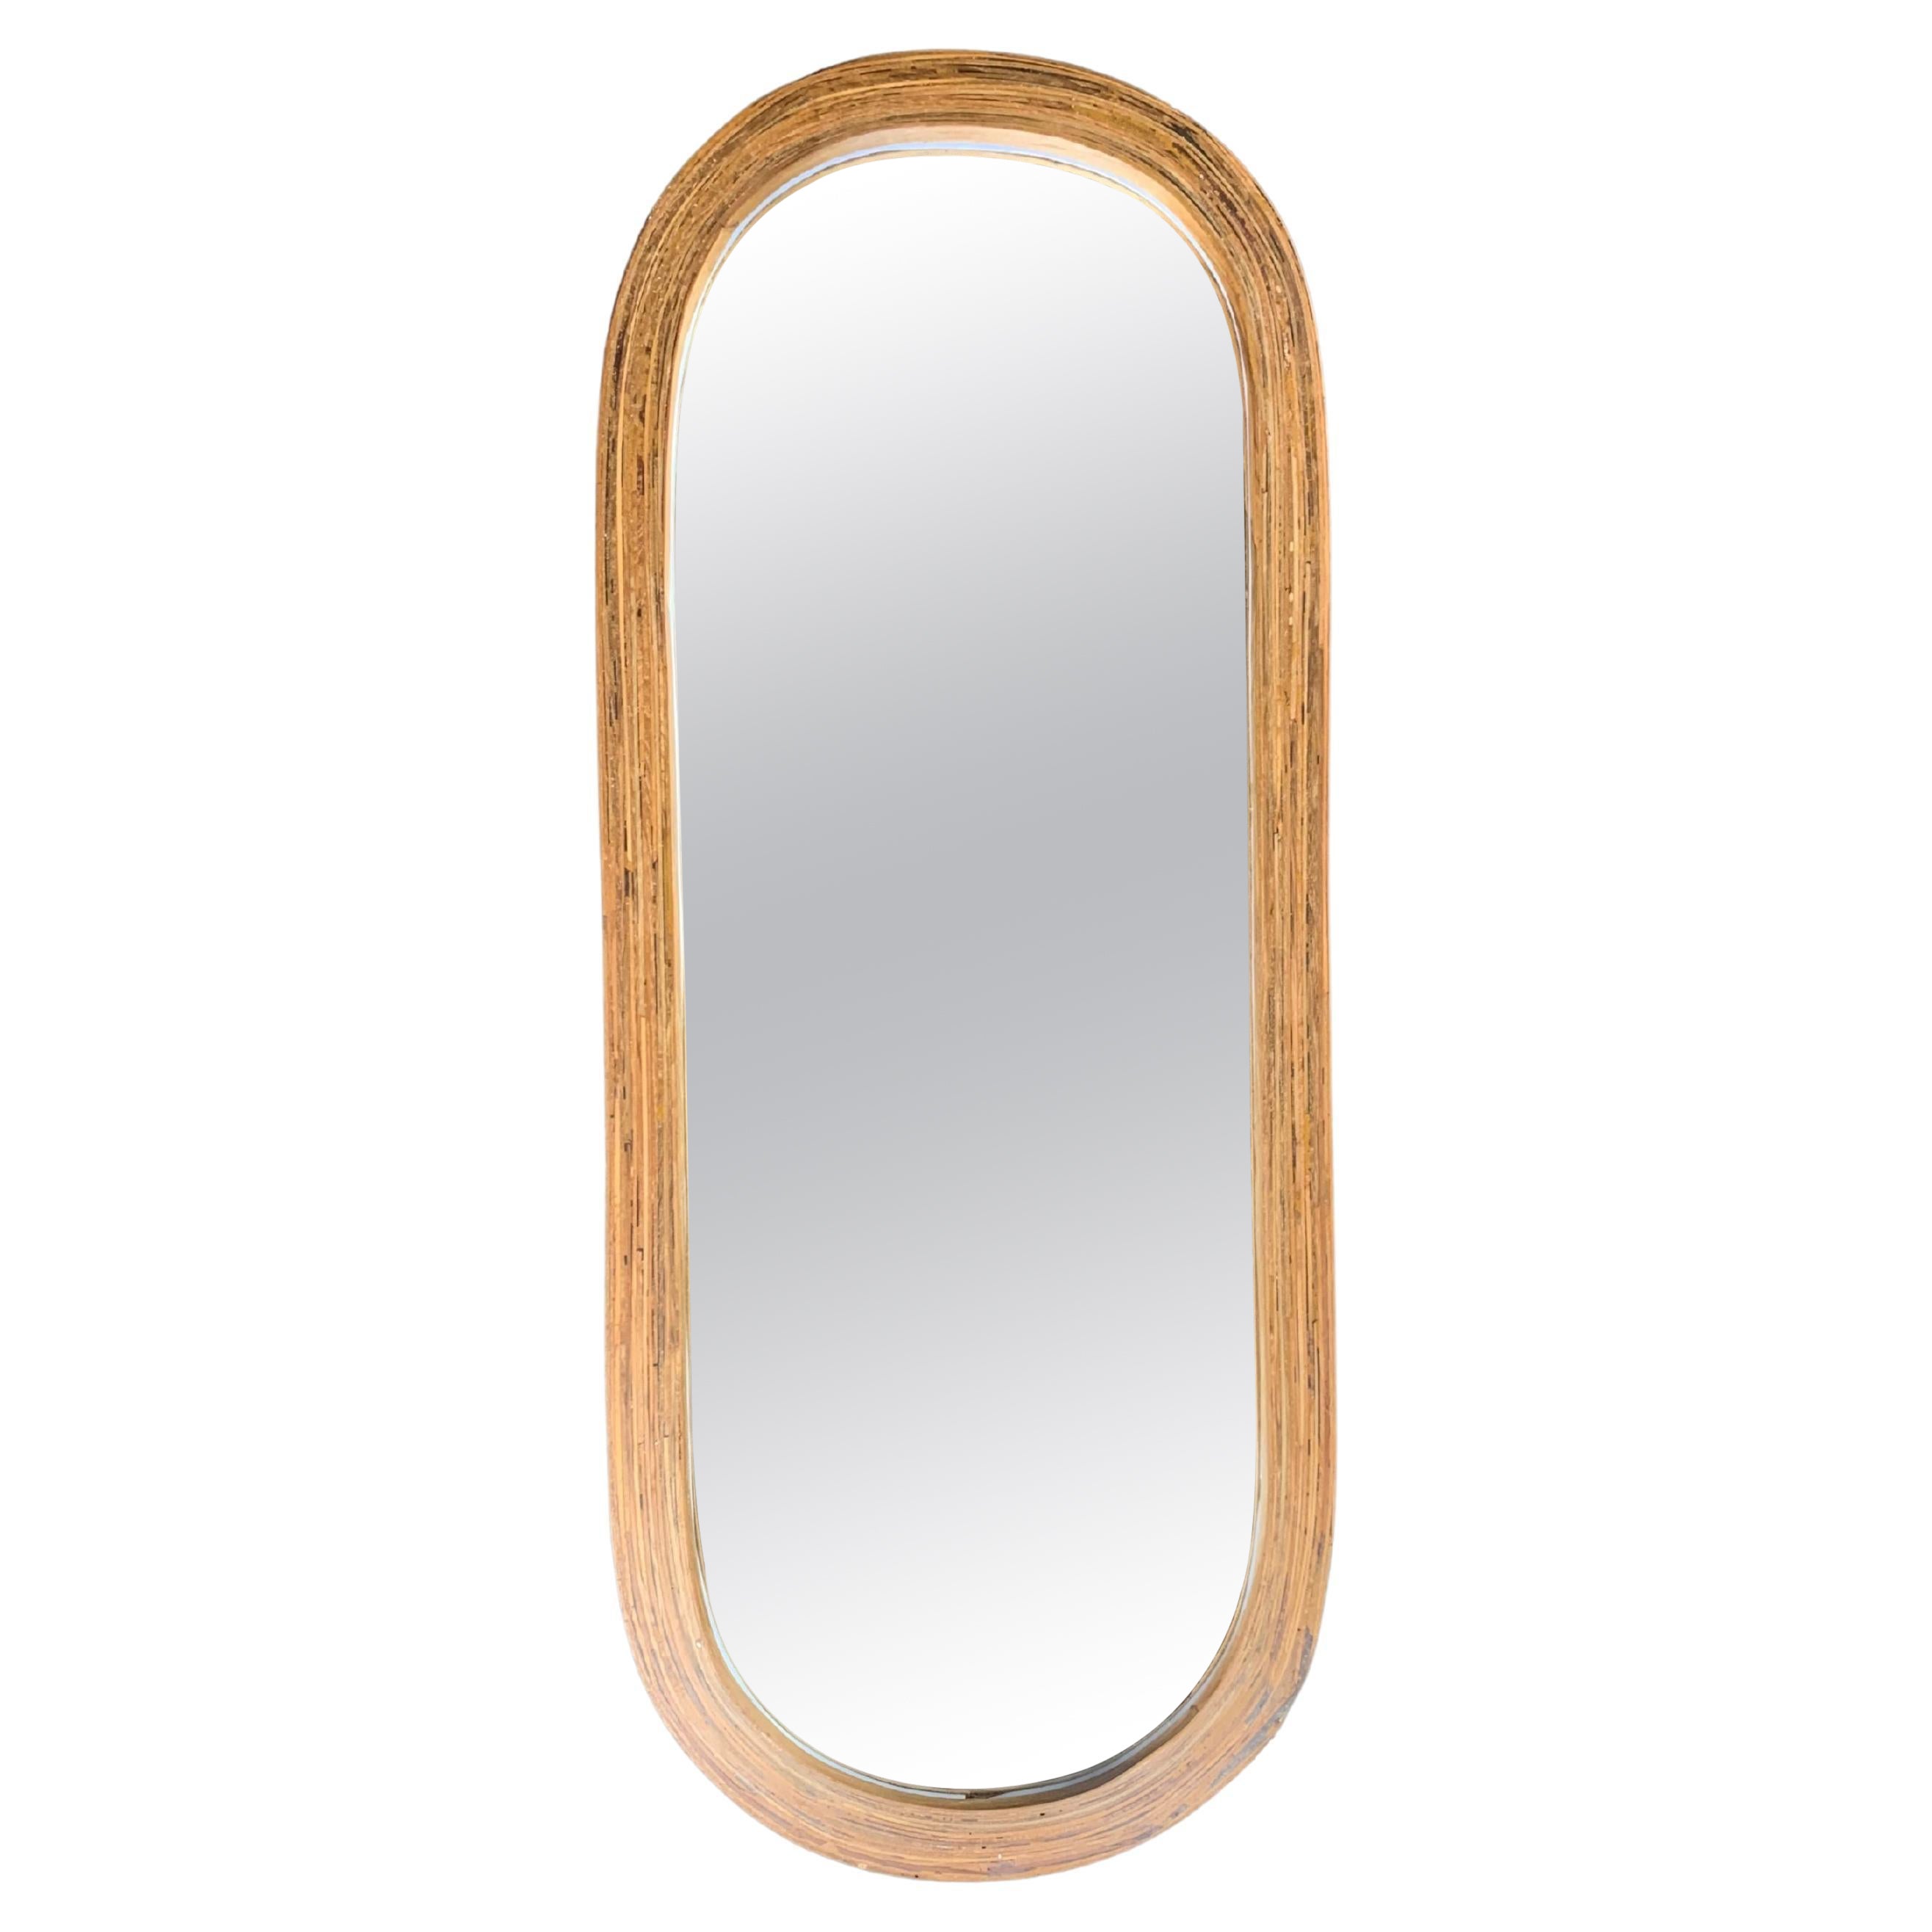 Ovaler Spiegel aus aufgearbeitetem Teakholz mit Rahmen, modern organisch, mit beleuchtetem Rahmen